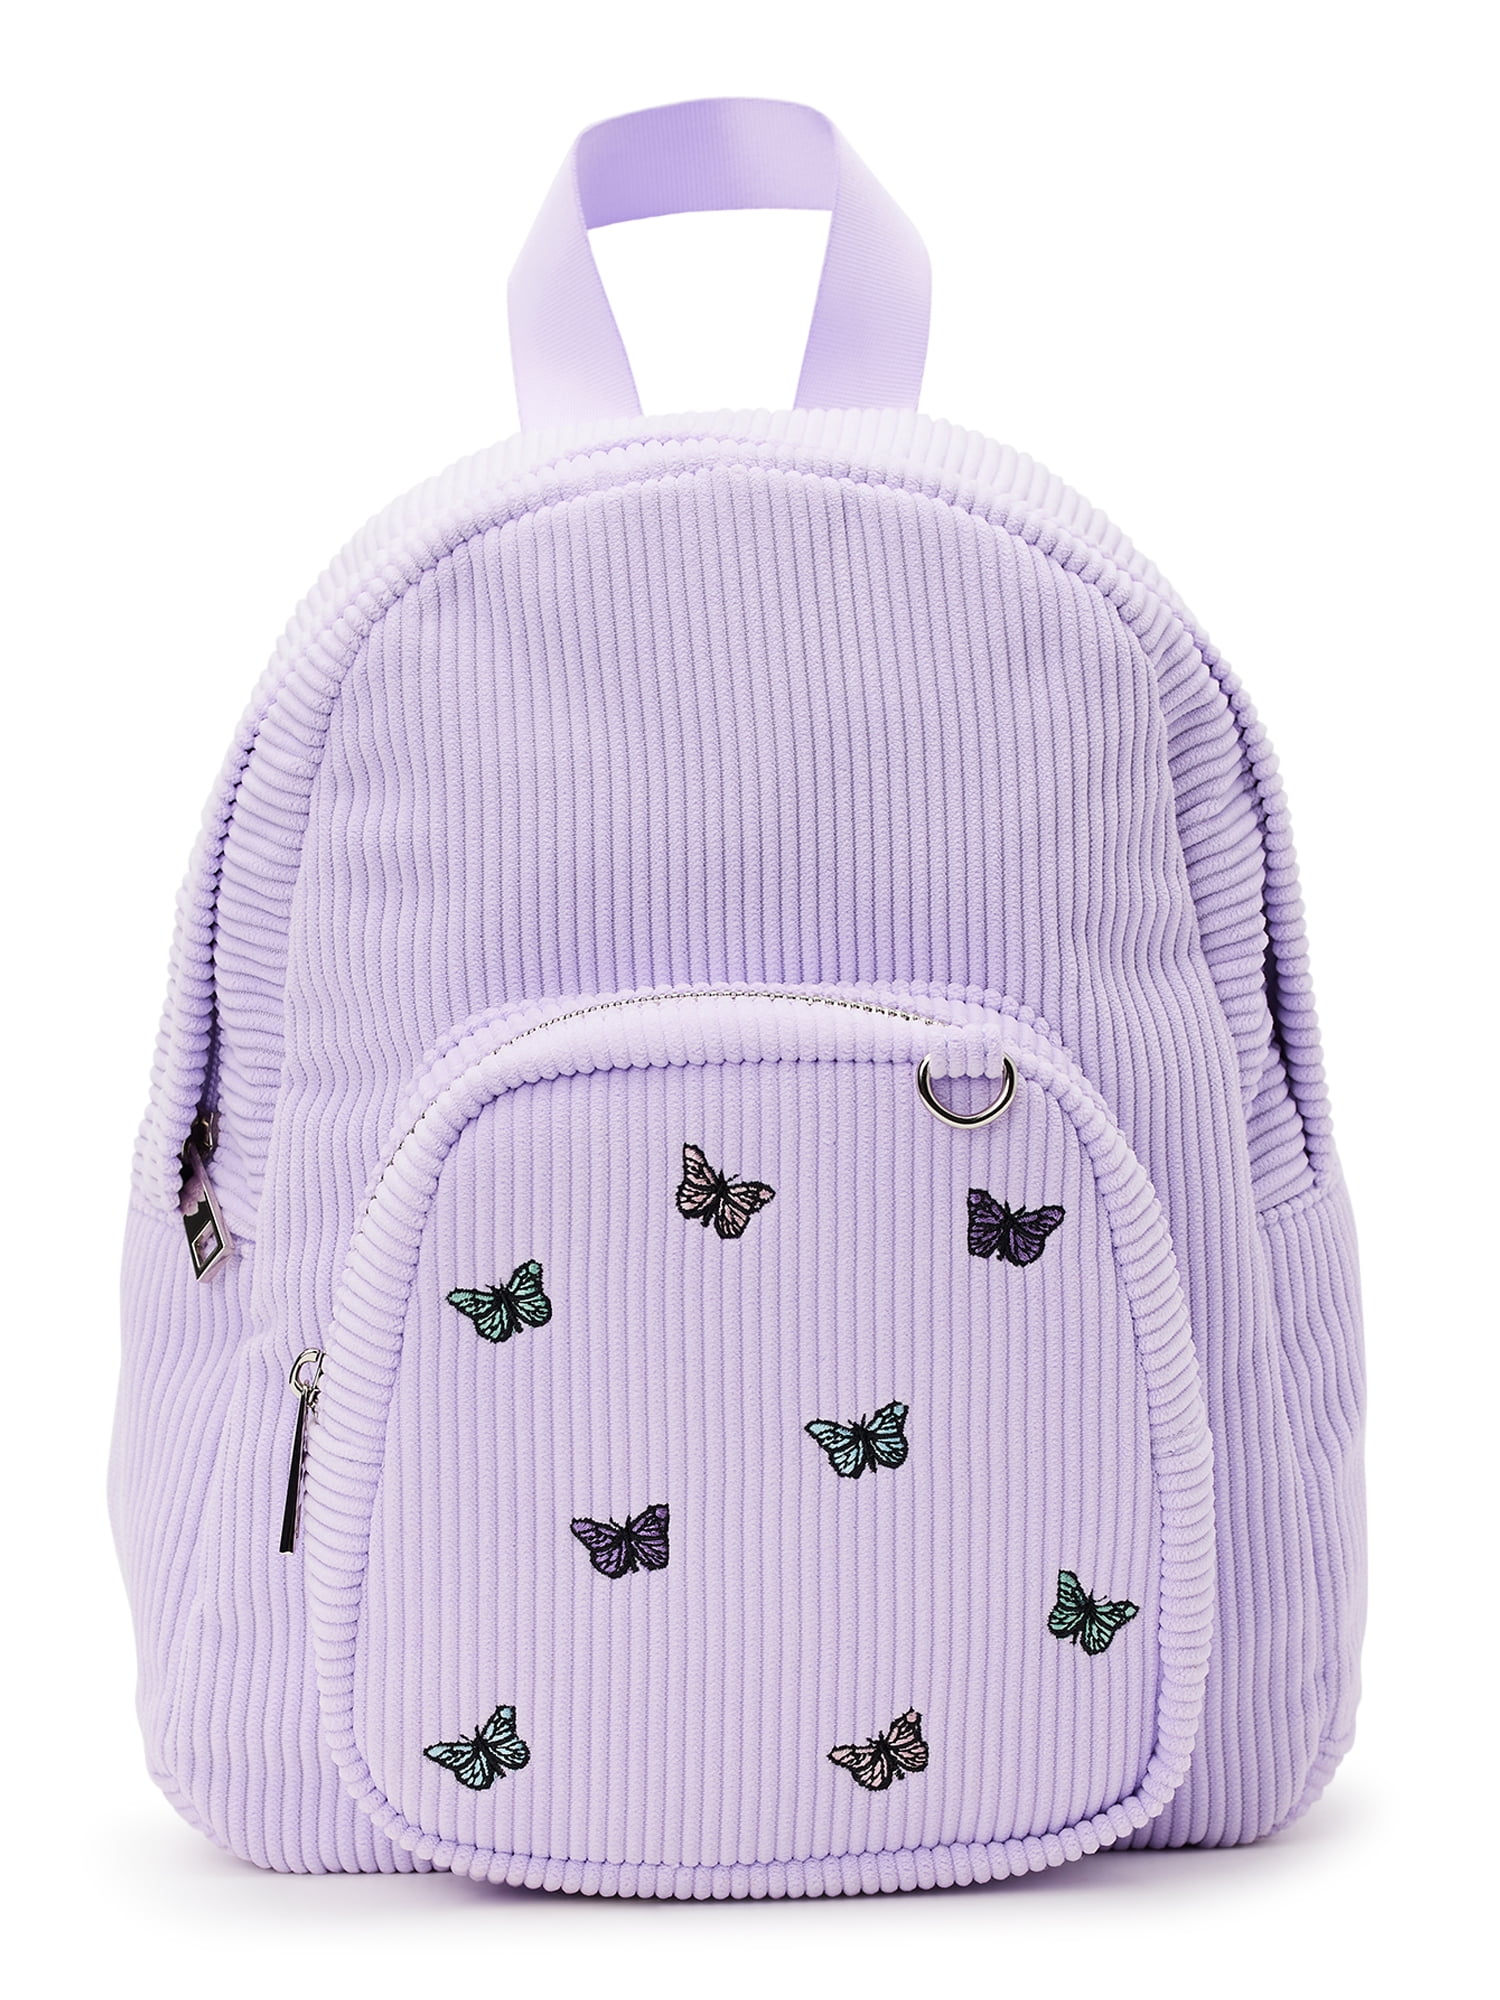 Women's Mini Backpack Kawaii Backpack Cute Small School Bags for Girls -  Walmart.com